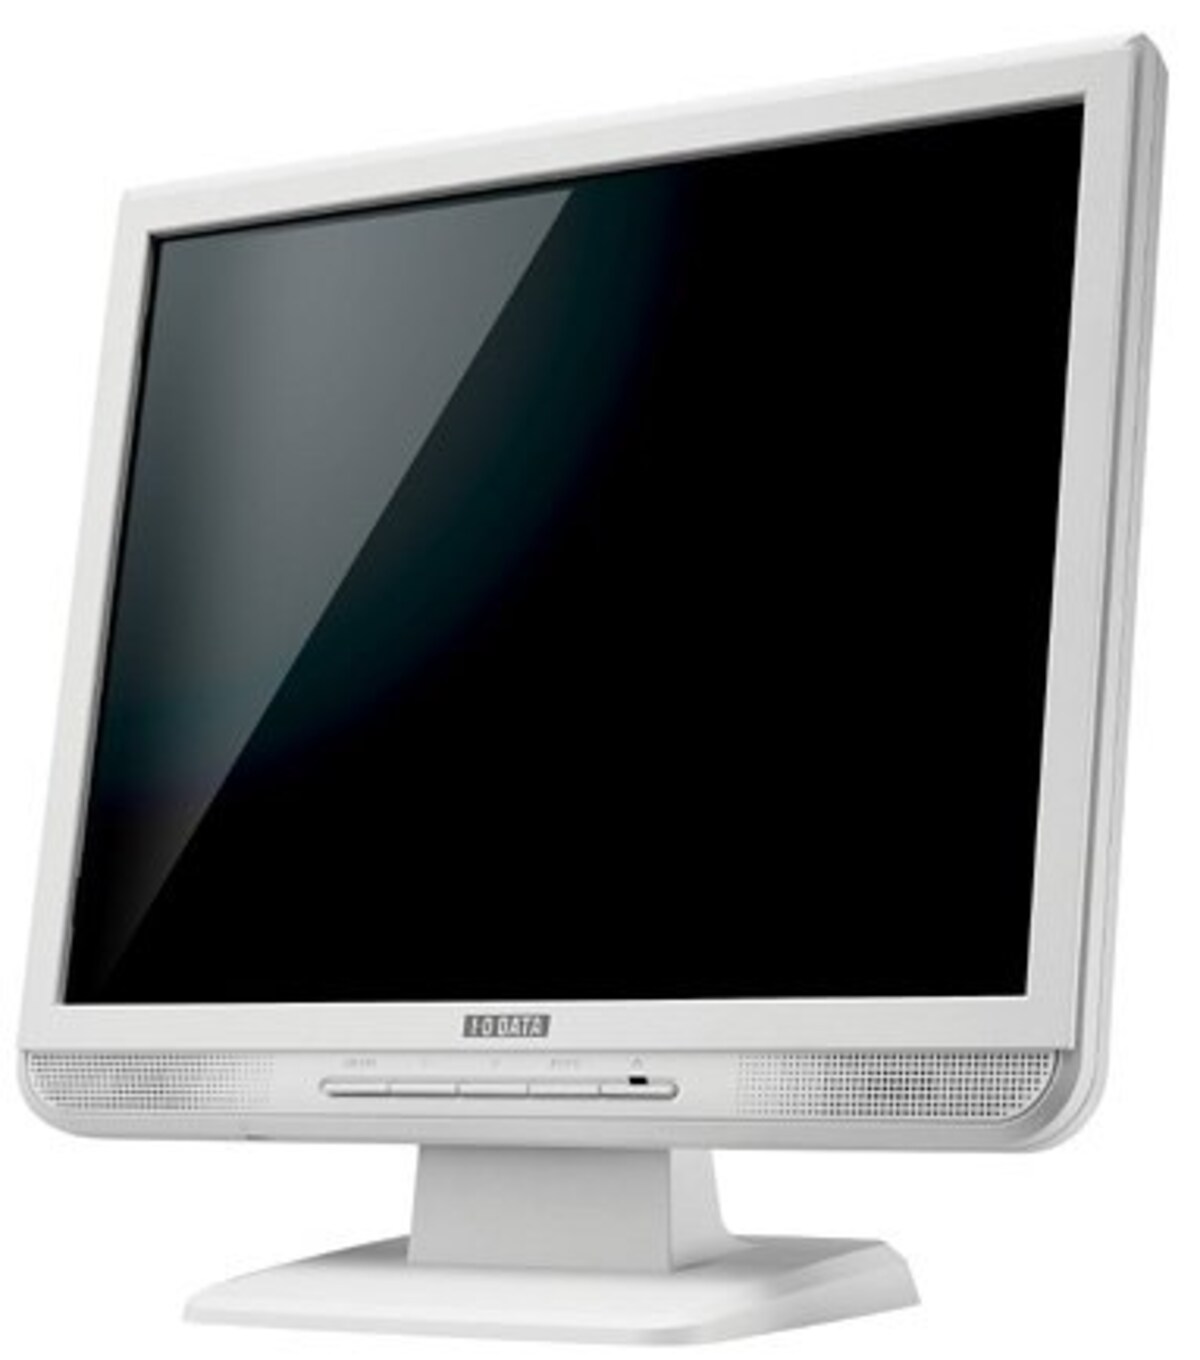 I-O DATA 17インチ液晶ディスプレイ LCD-A174G-P ホワイト (SXGA, アナログ, スピーカー内蔵, 保護フィルター内蔵)